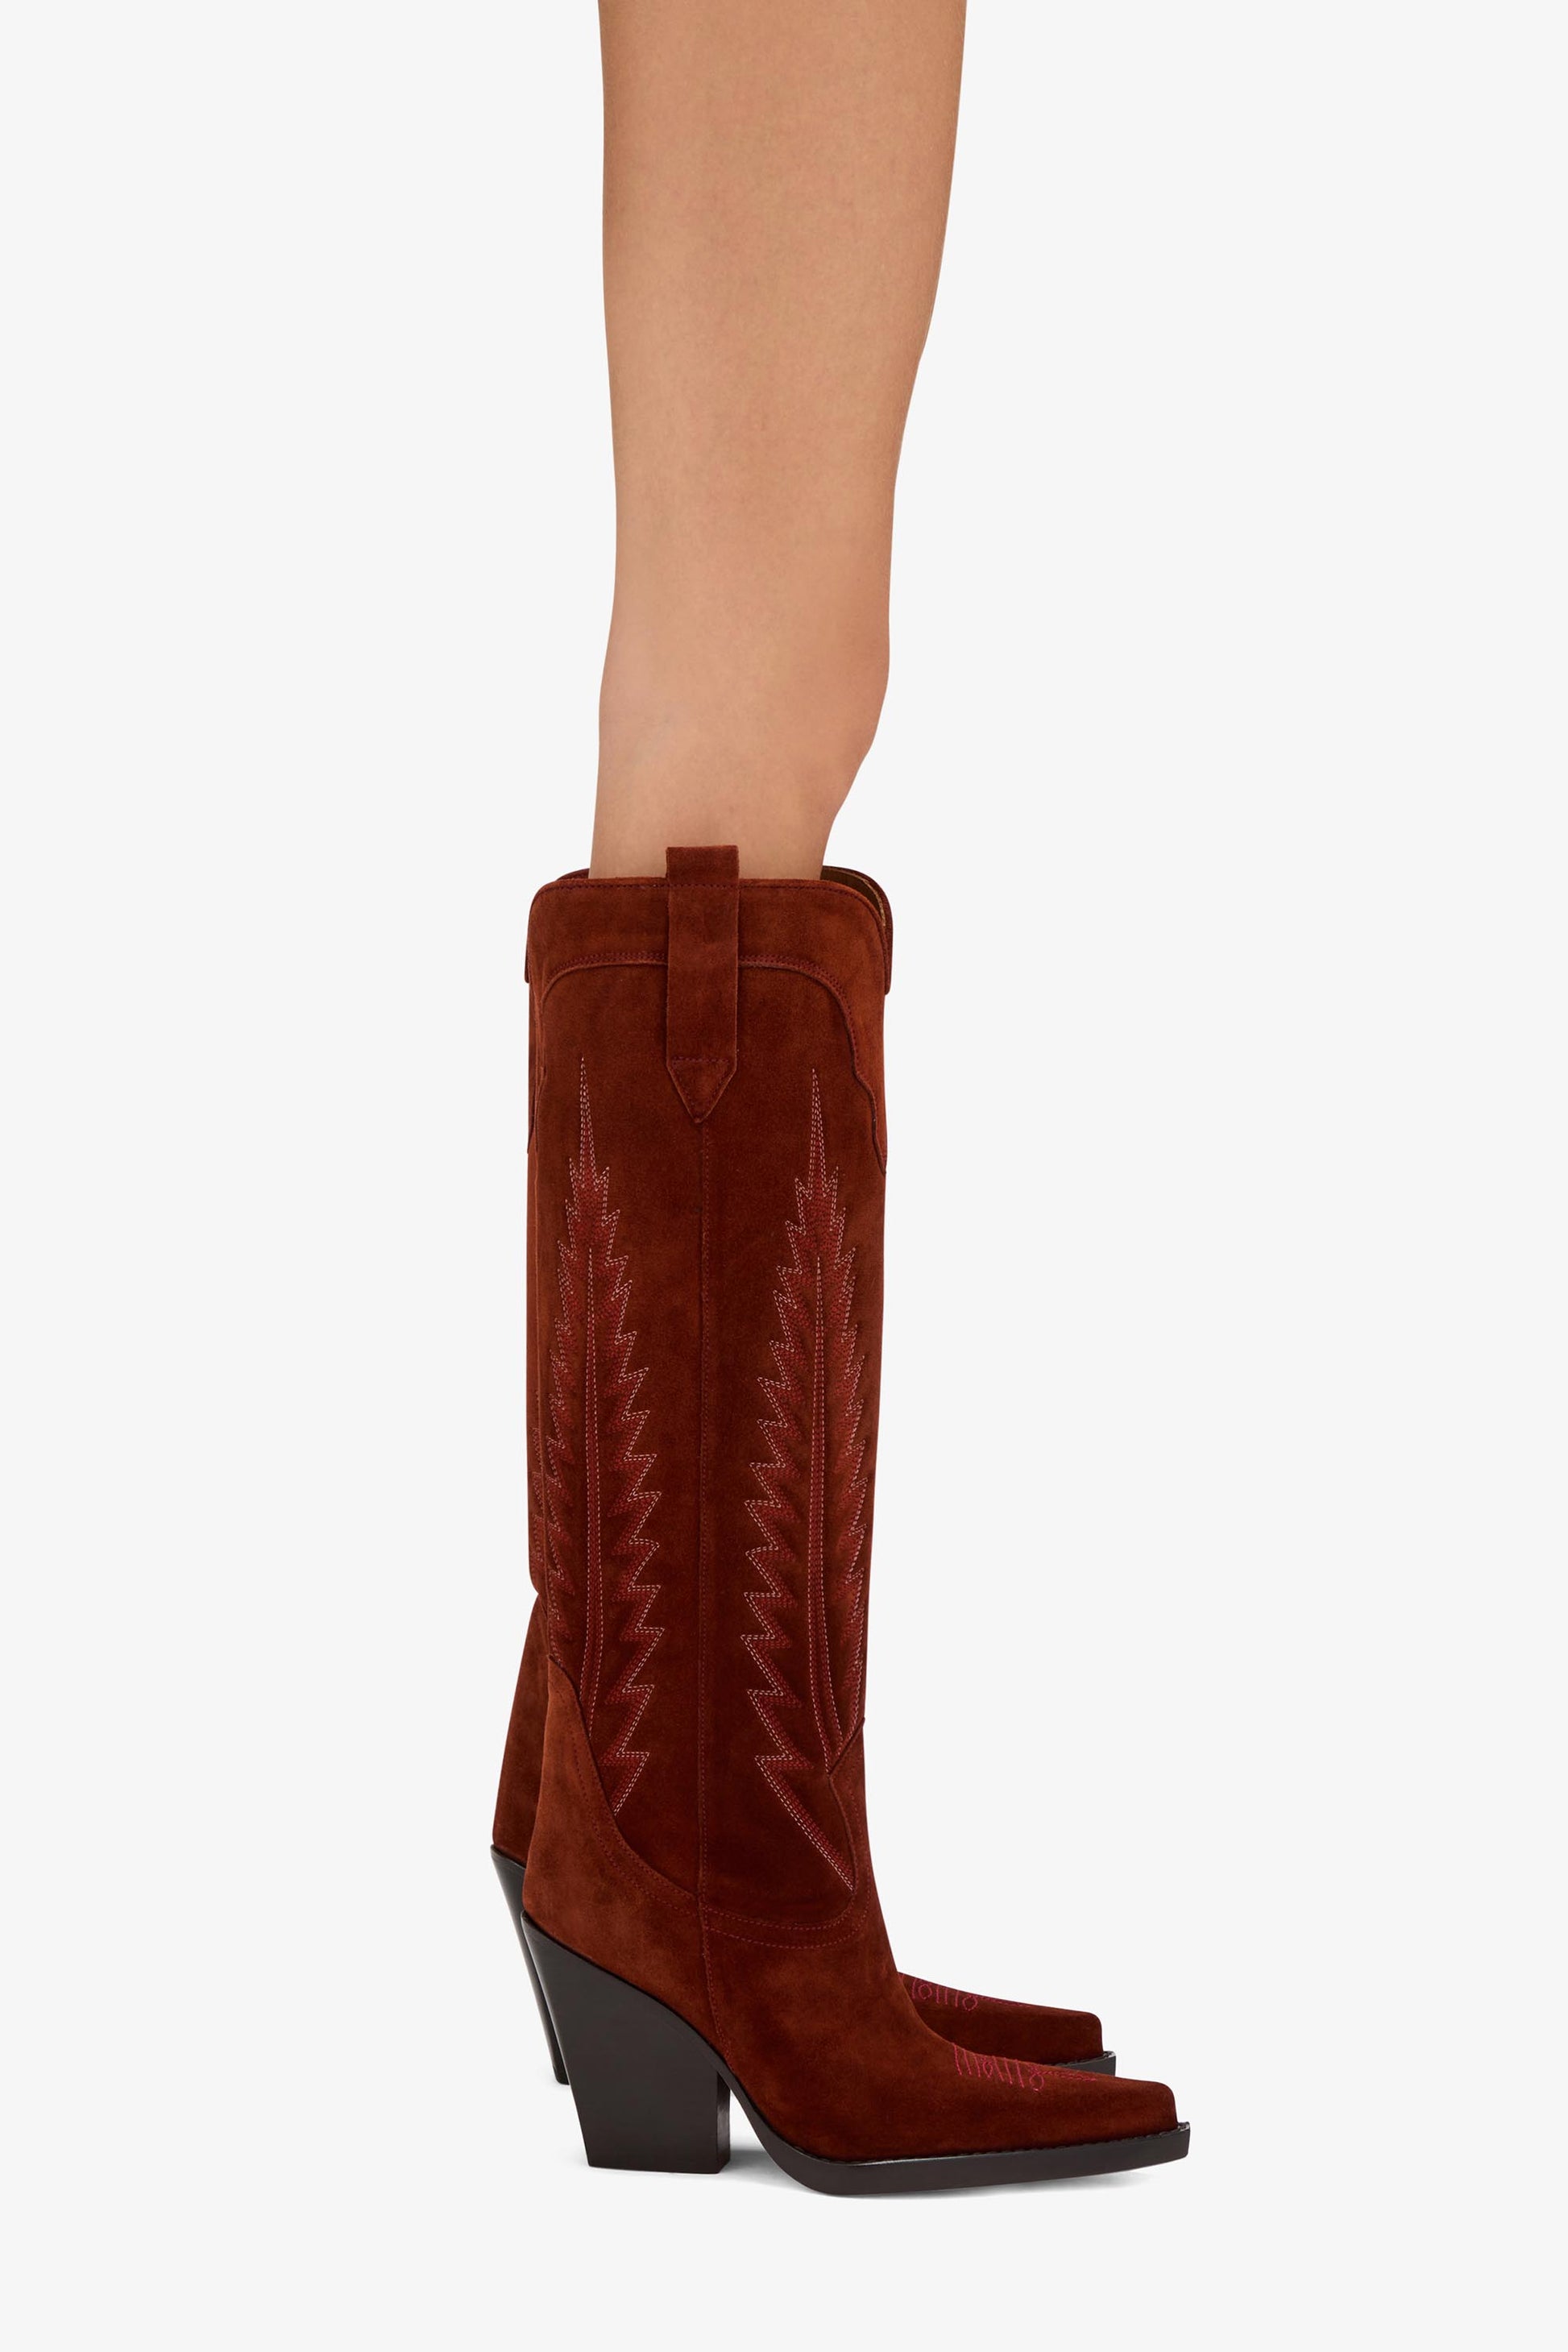 Texanische Stiefel aus besticktem Veloursleder in der Farbe Rost - Produkt getragen